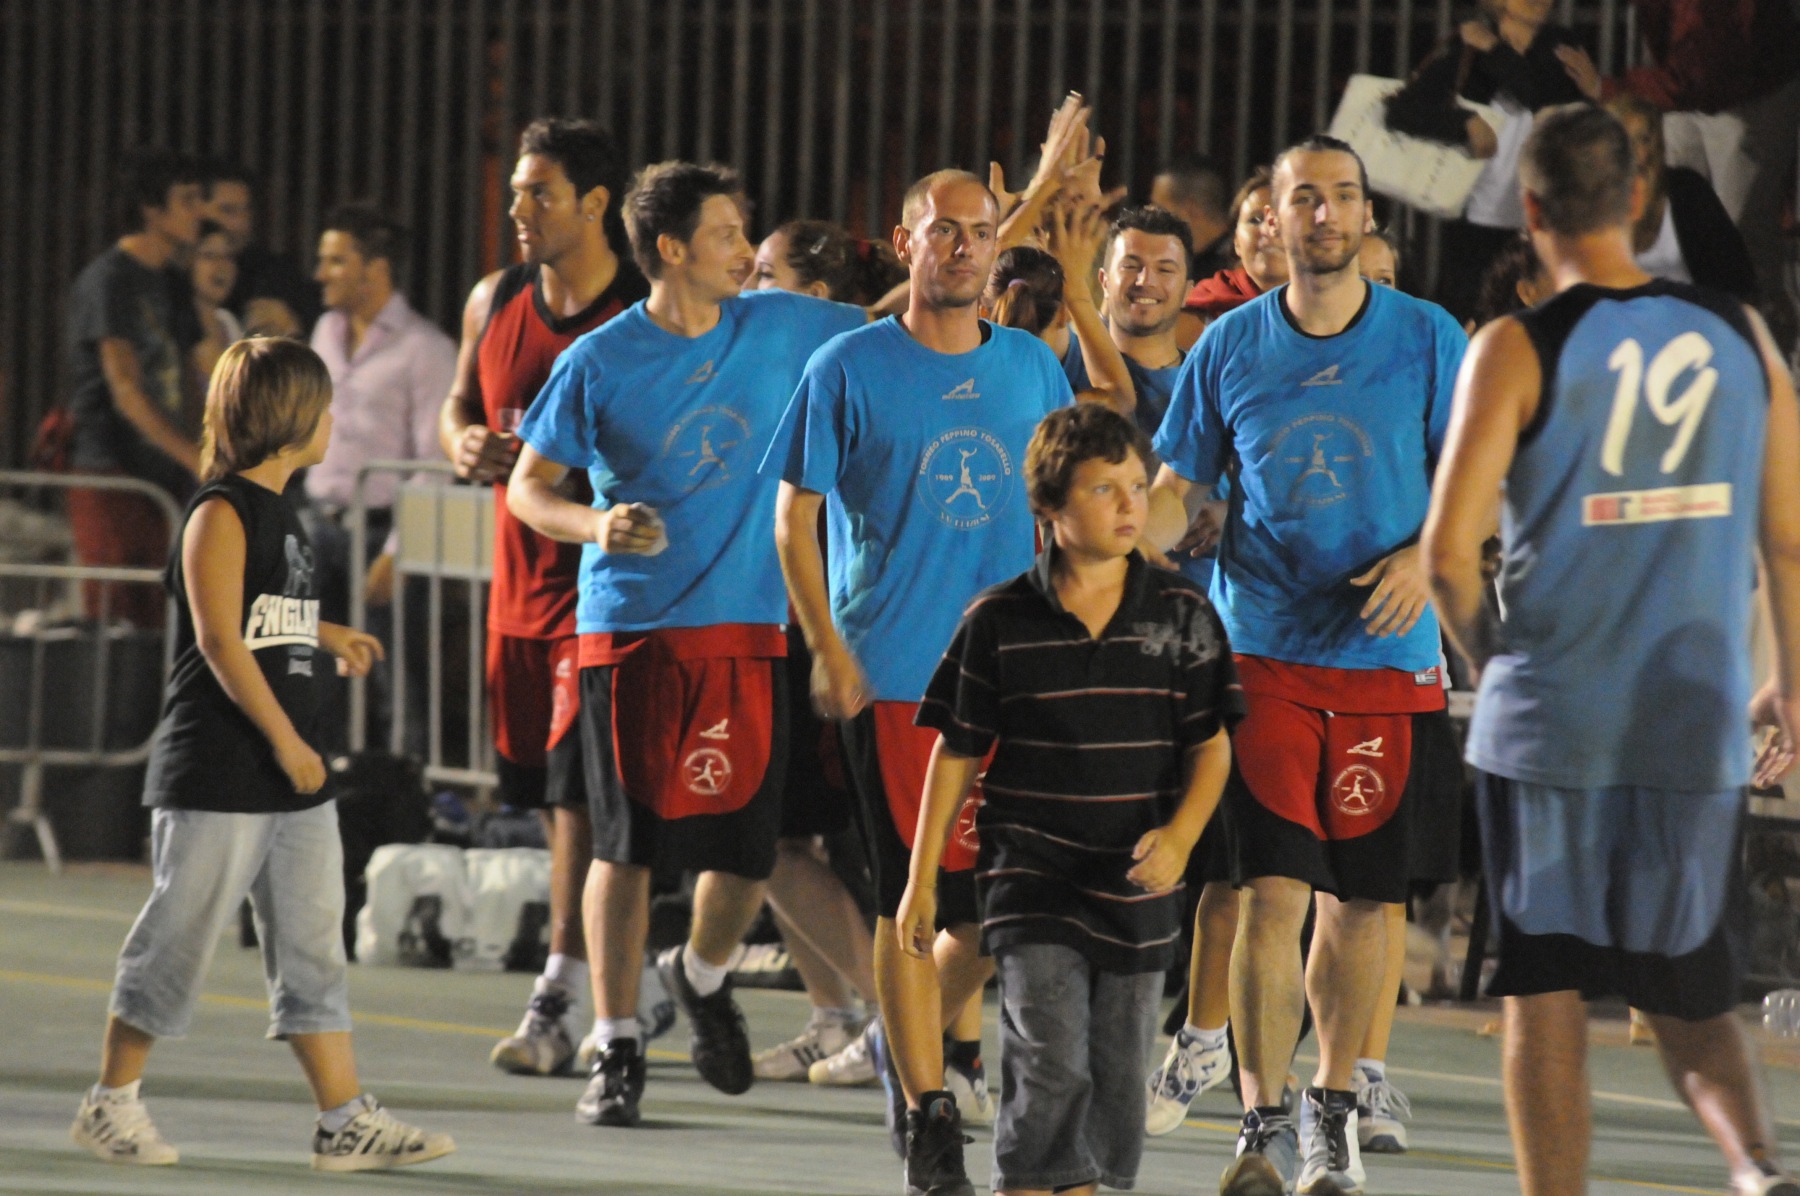 2009-07-18 Torneo Tosarello